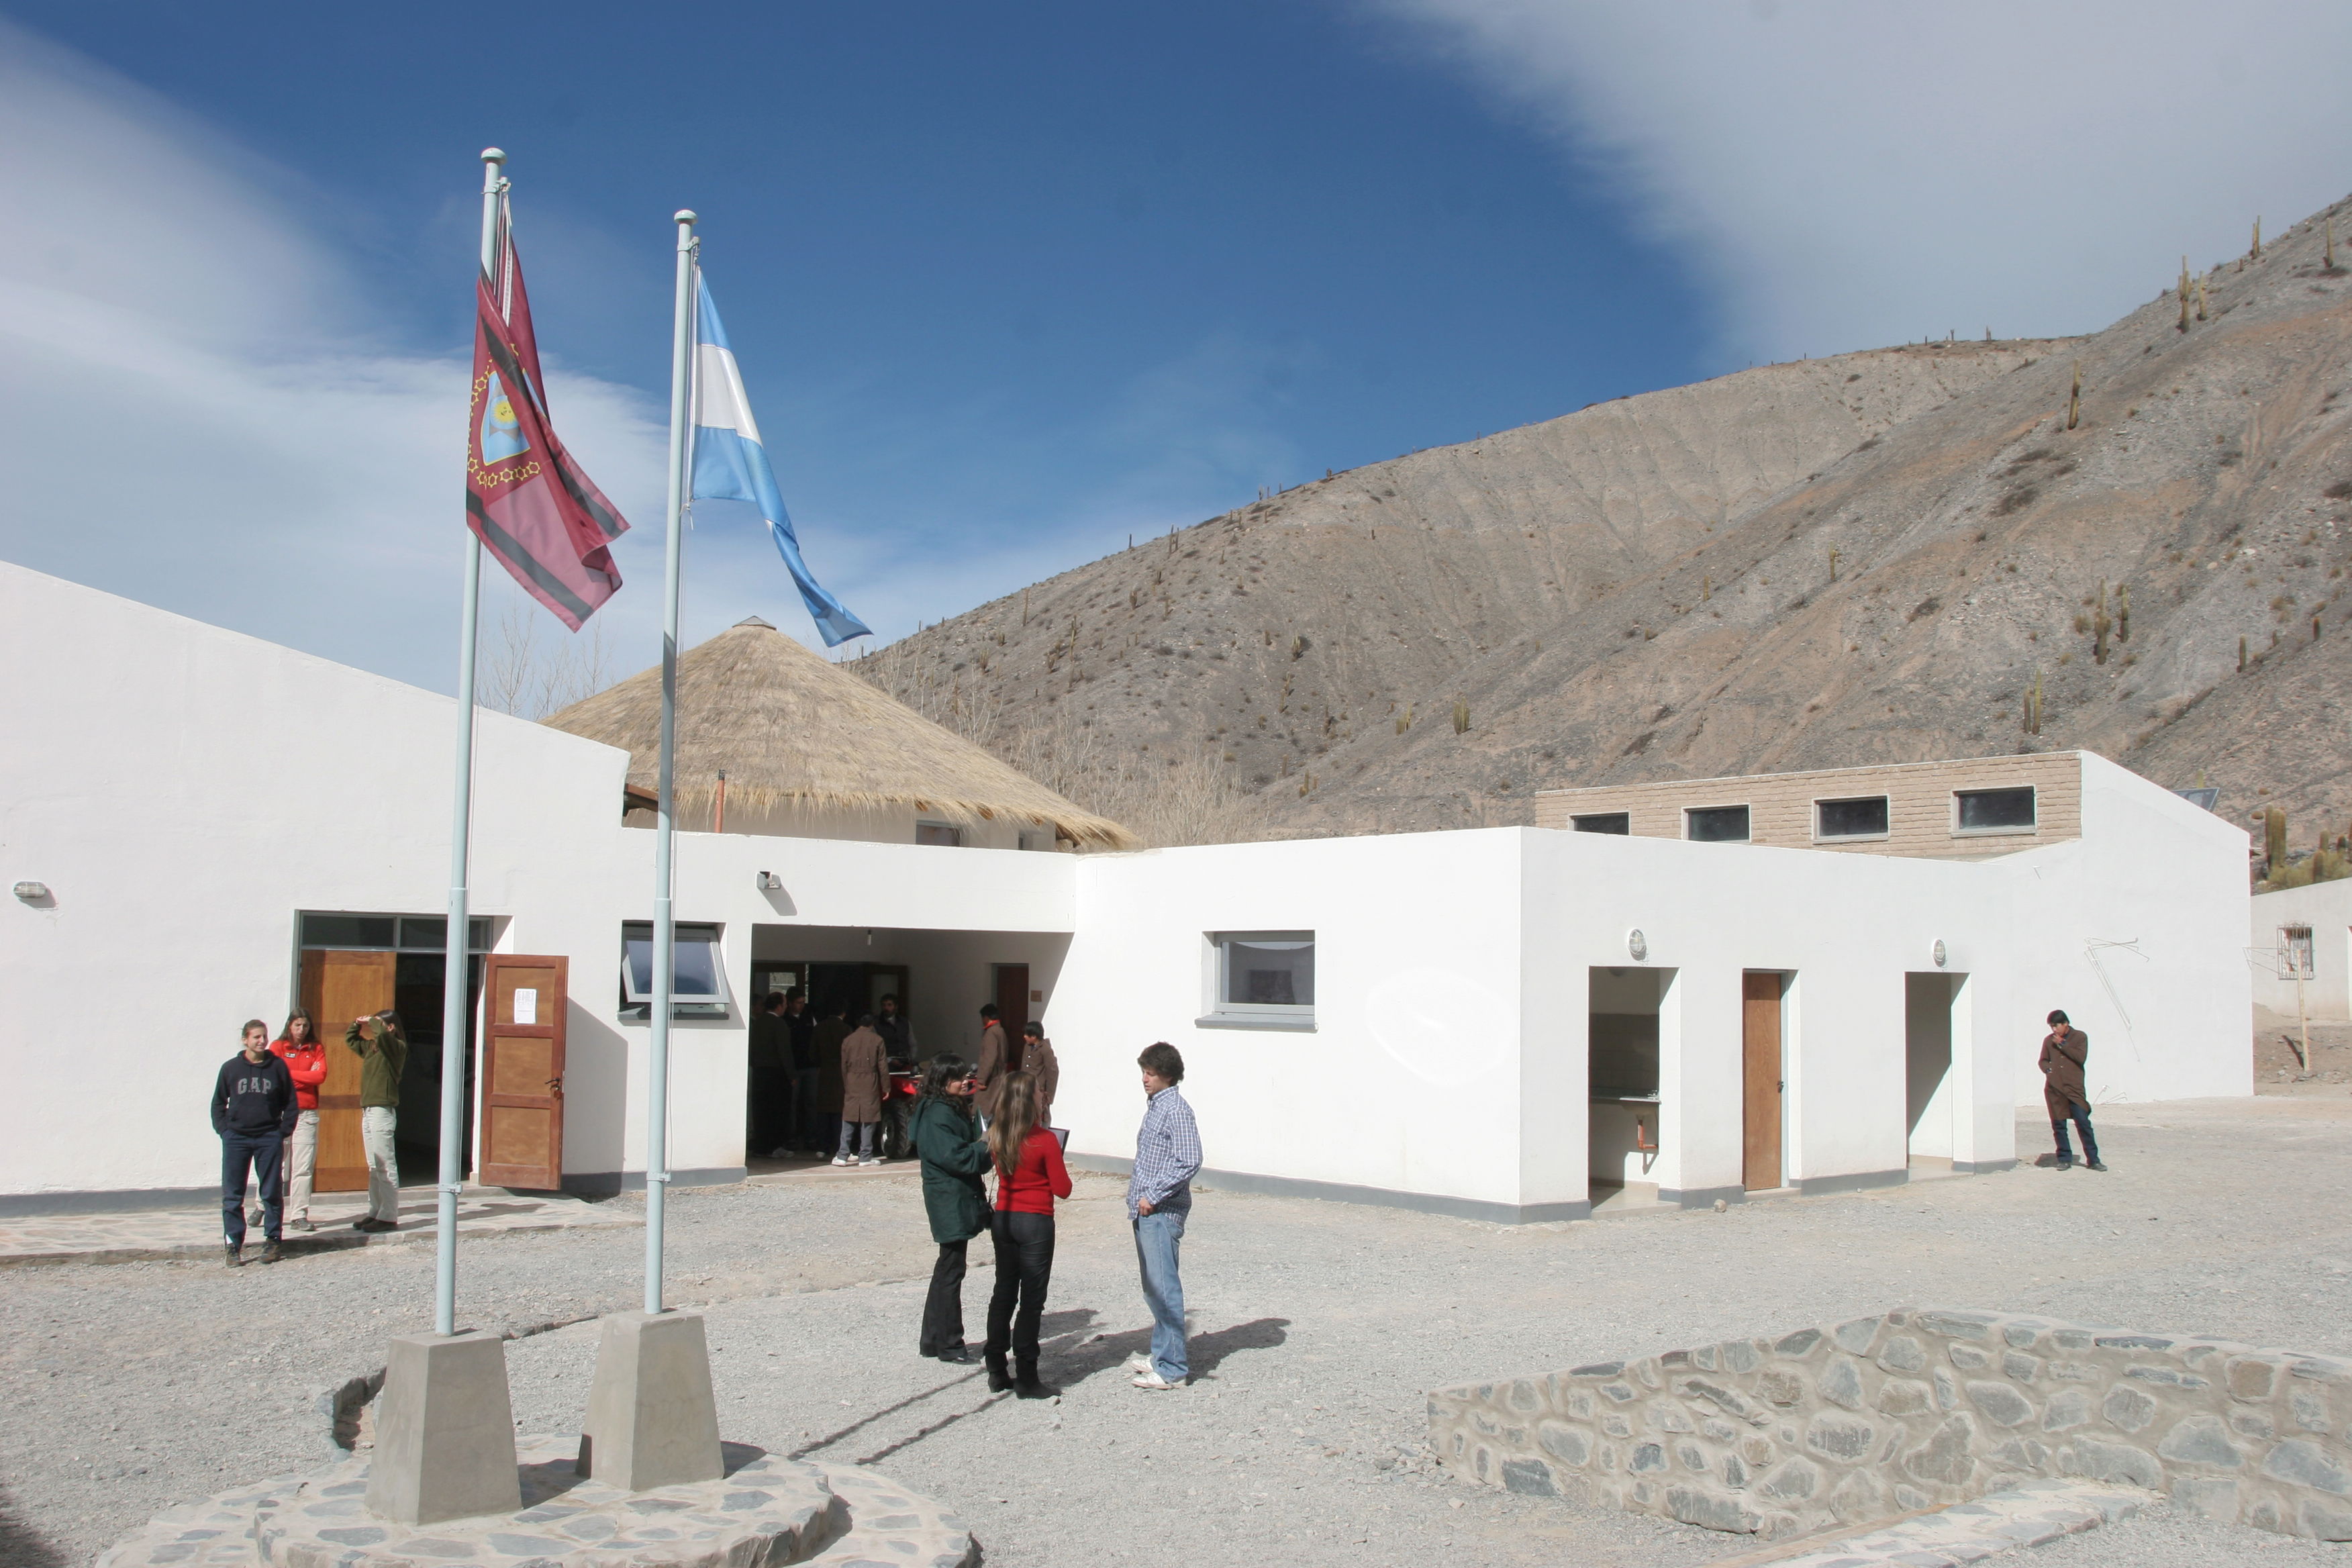 El secundario de montaña Alfarcito, en Salta, tuvo su primera promoción en 2014.